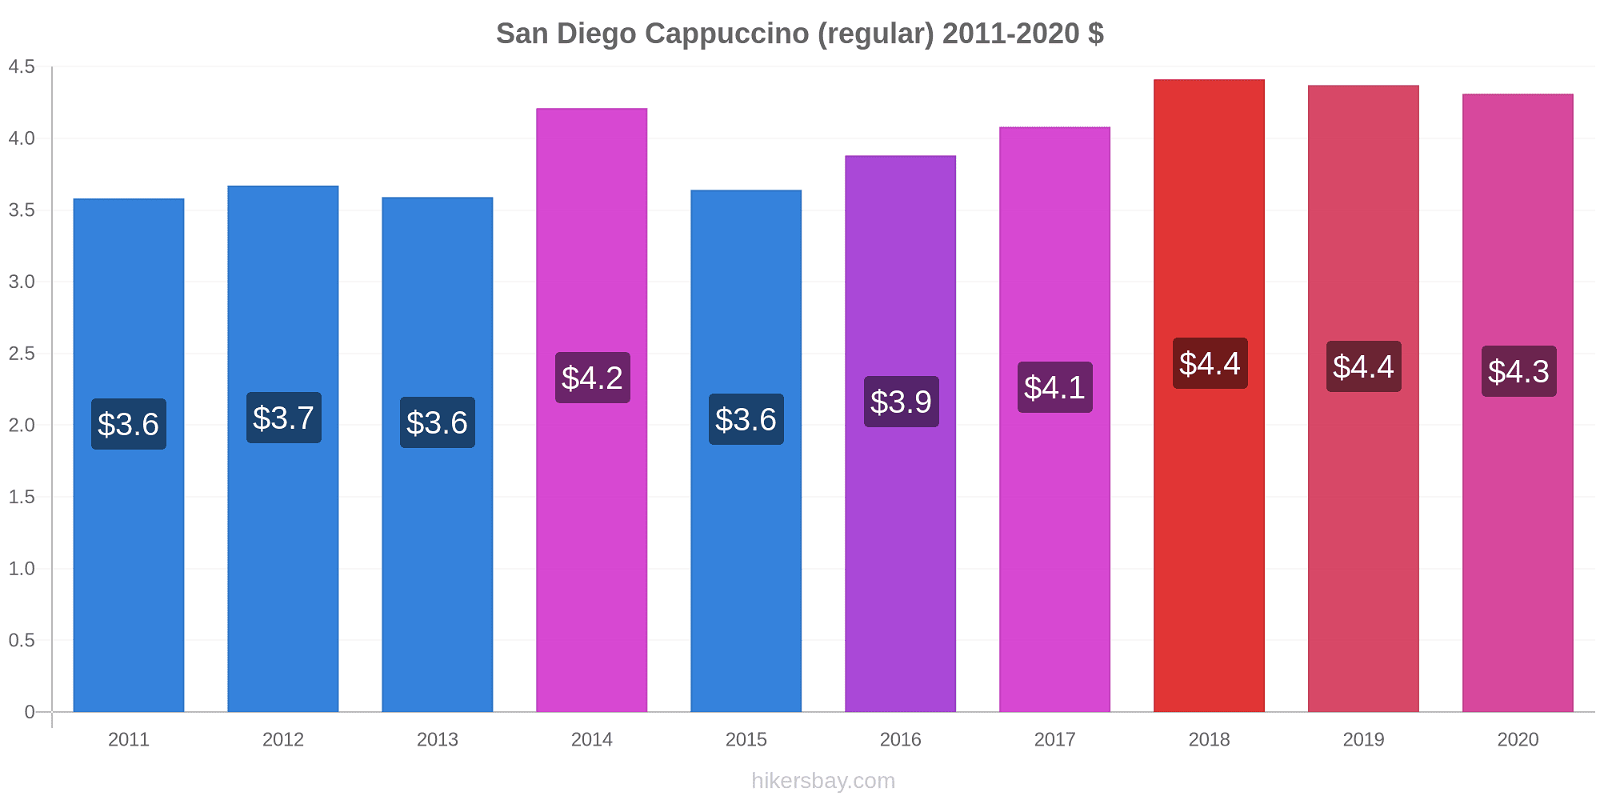 San Diego variação de preço Capuccino (regular) hikersbay.com